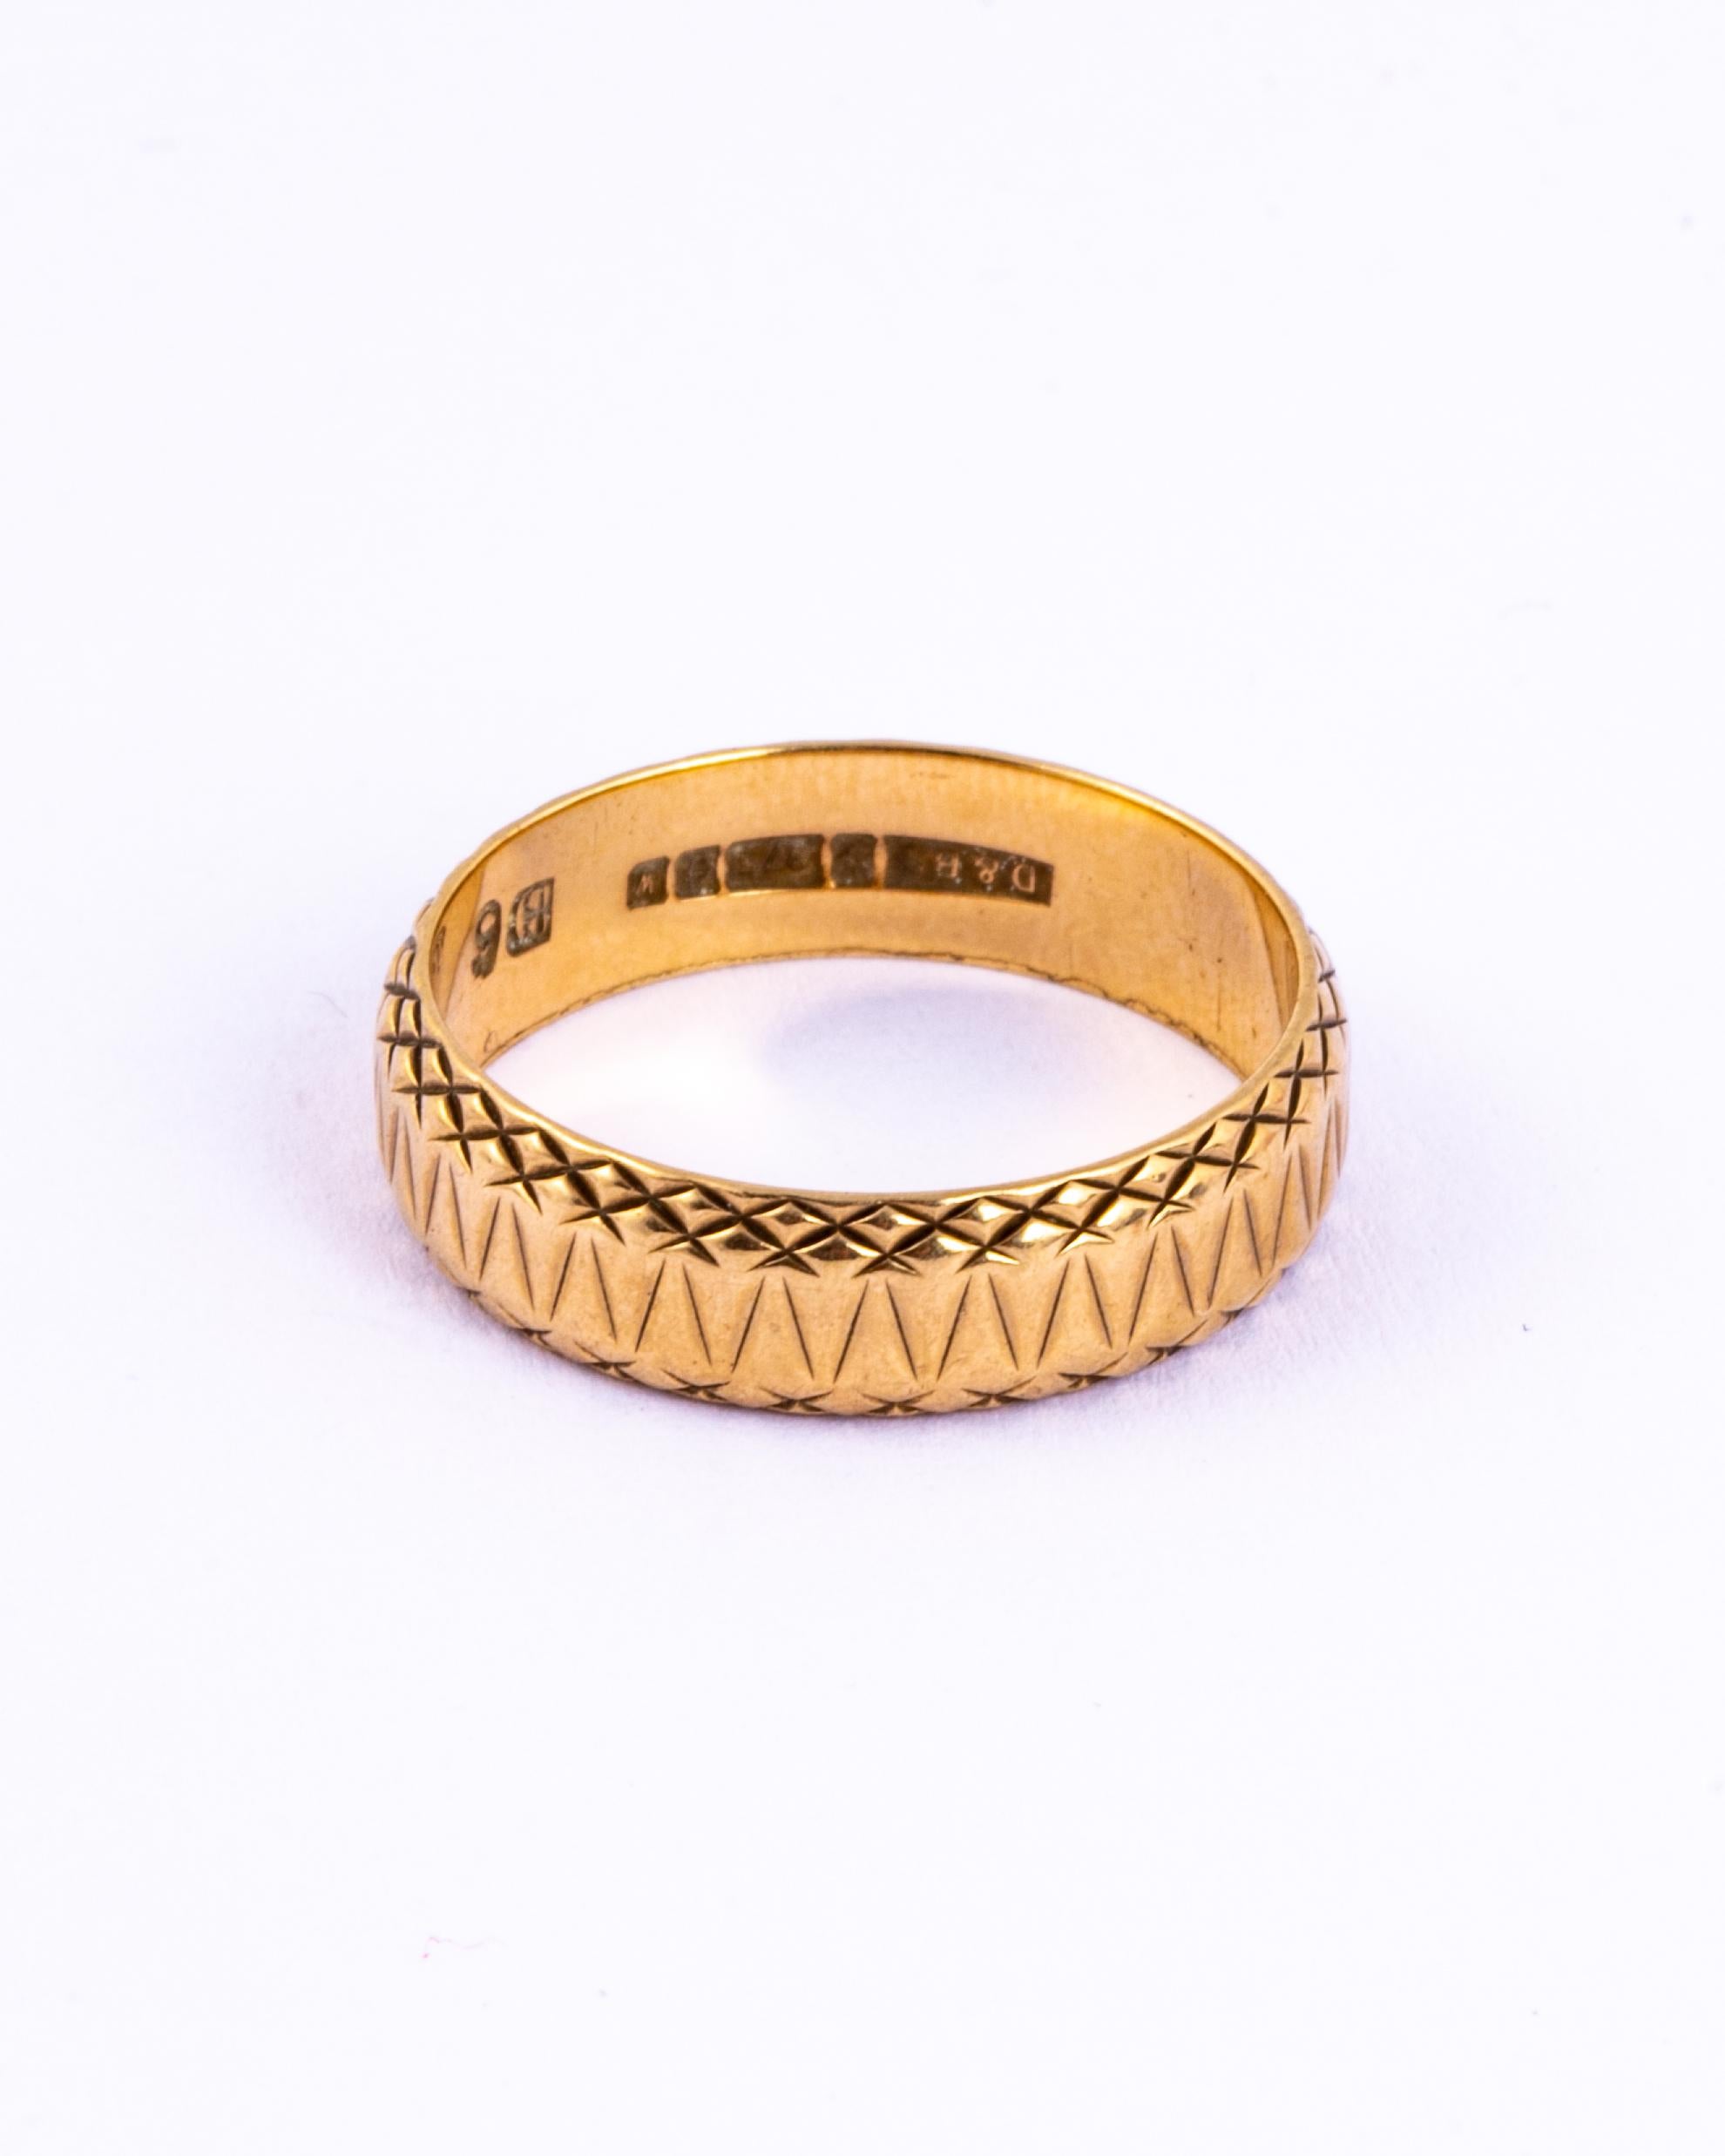 Das wunderschön in dieses 9-karätige Goldband eingravierte Design ist voller Details. Dies wäre ein großartiger, ausgefallener Ehering oder ein verschnörkelter Alltagsring. Hergestellt in Birmingham, England.

Größe: Q 1/2 oder 8 1/4 
Breite des